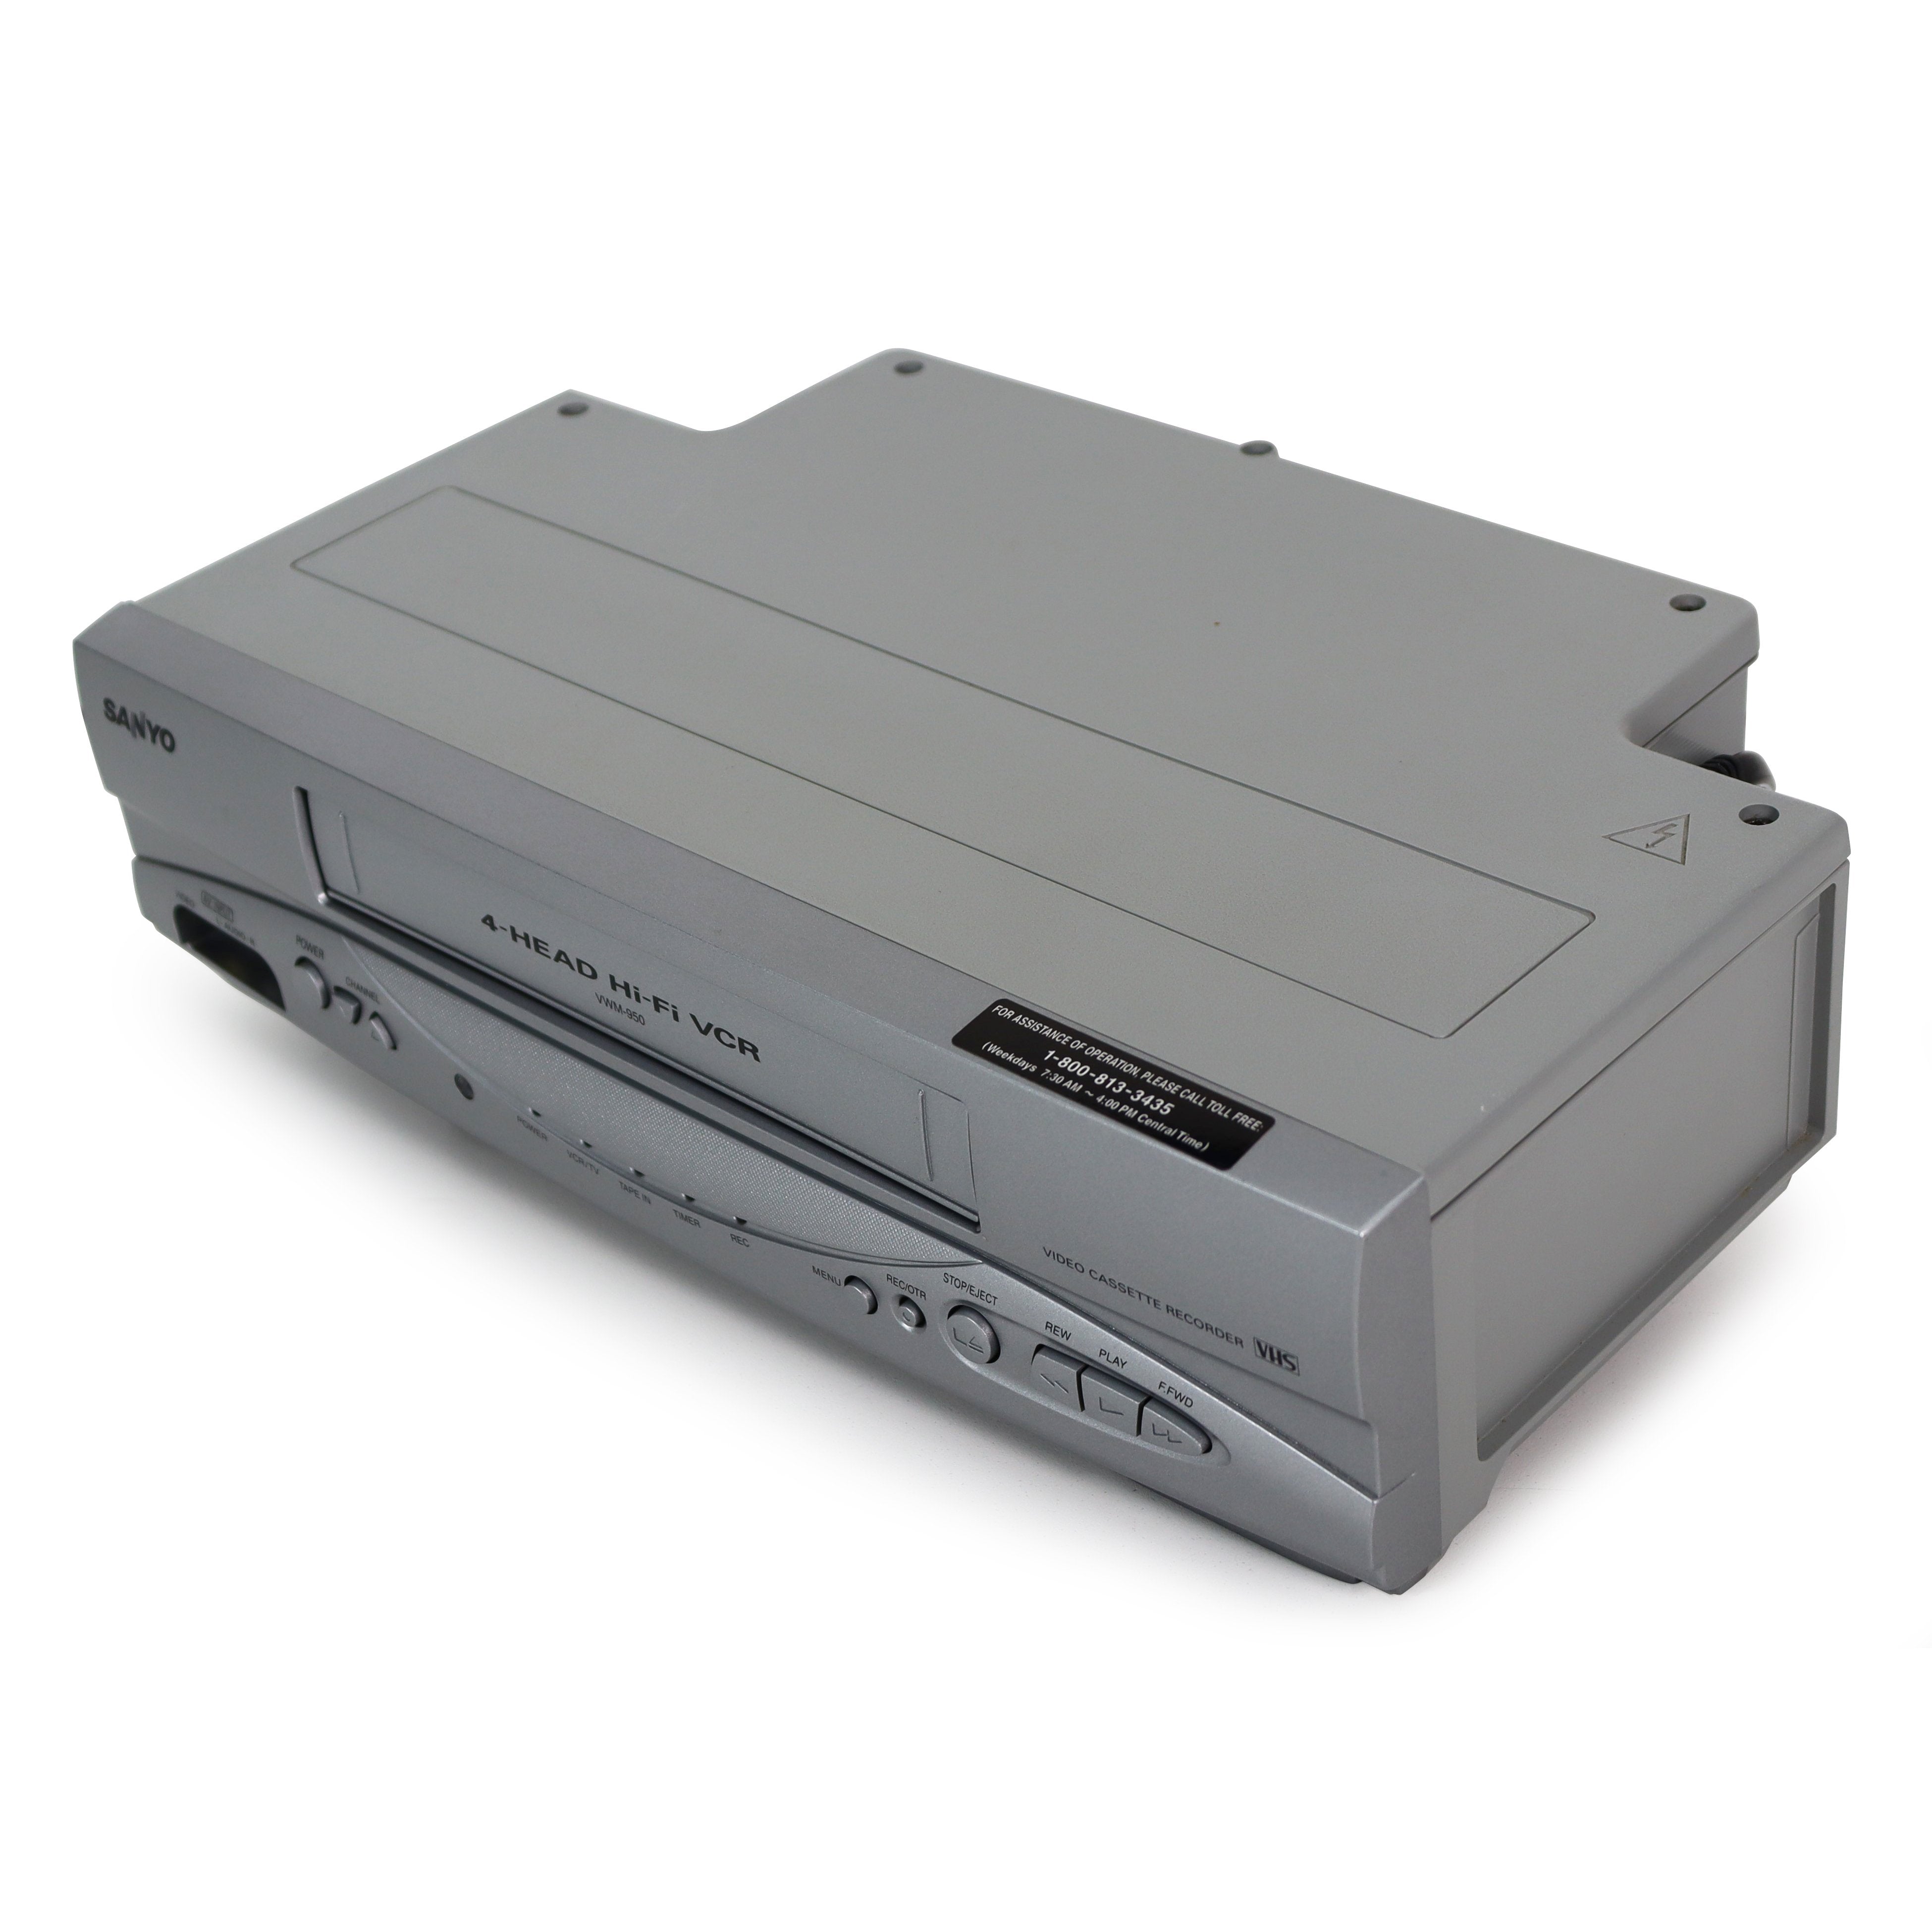 Sanyo Vwm-380 4 Reproductor de grabadora de casete de vídeo VHS VCR de la  cabeza